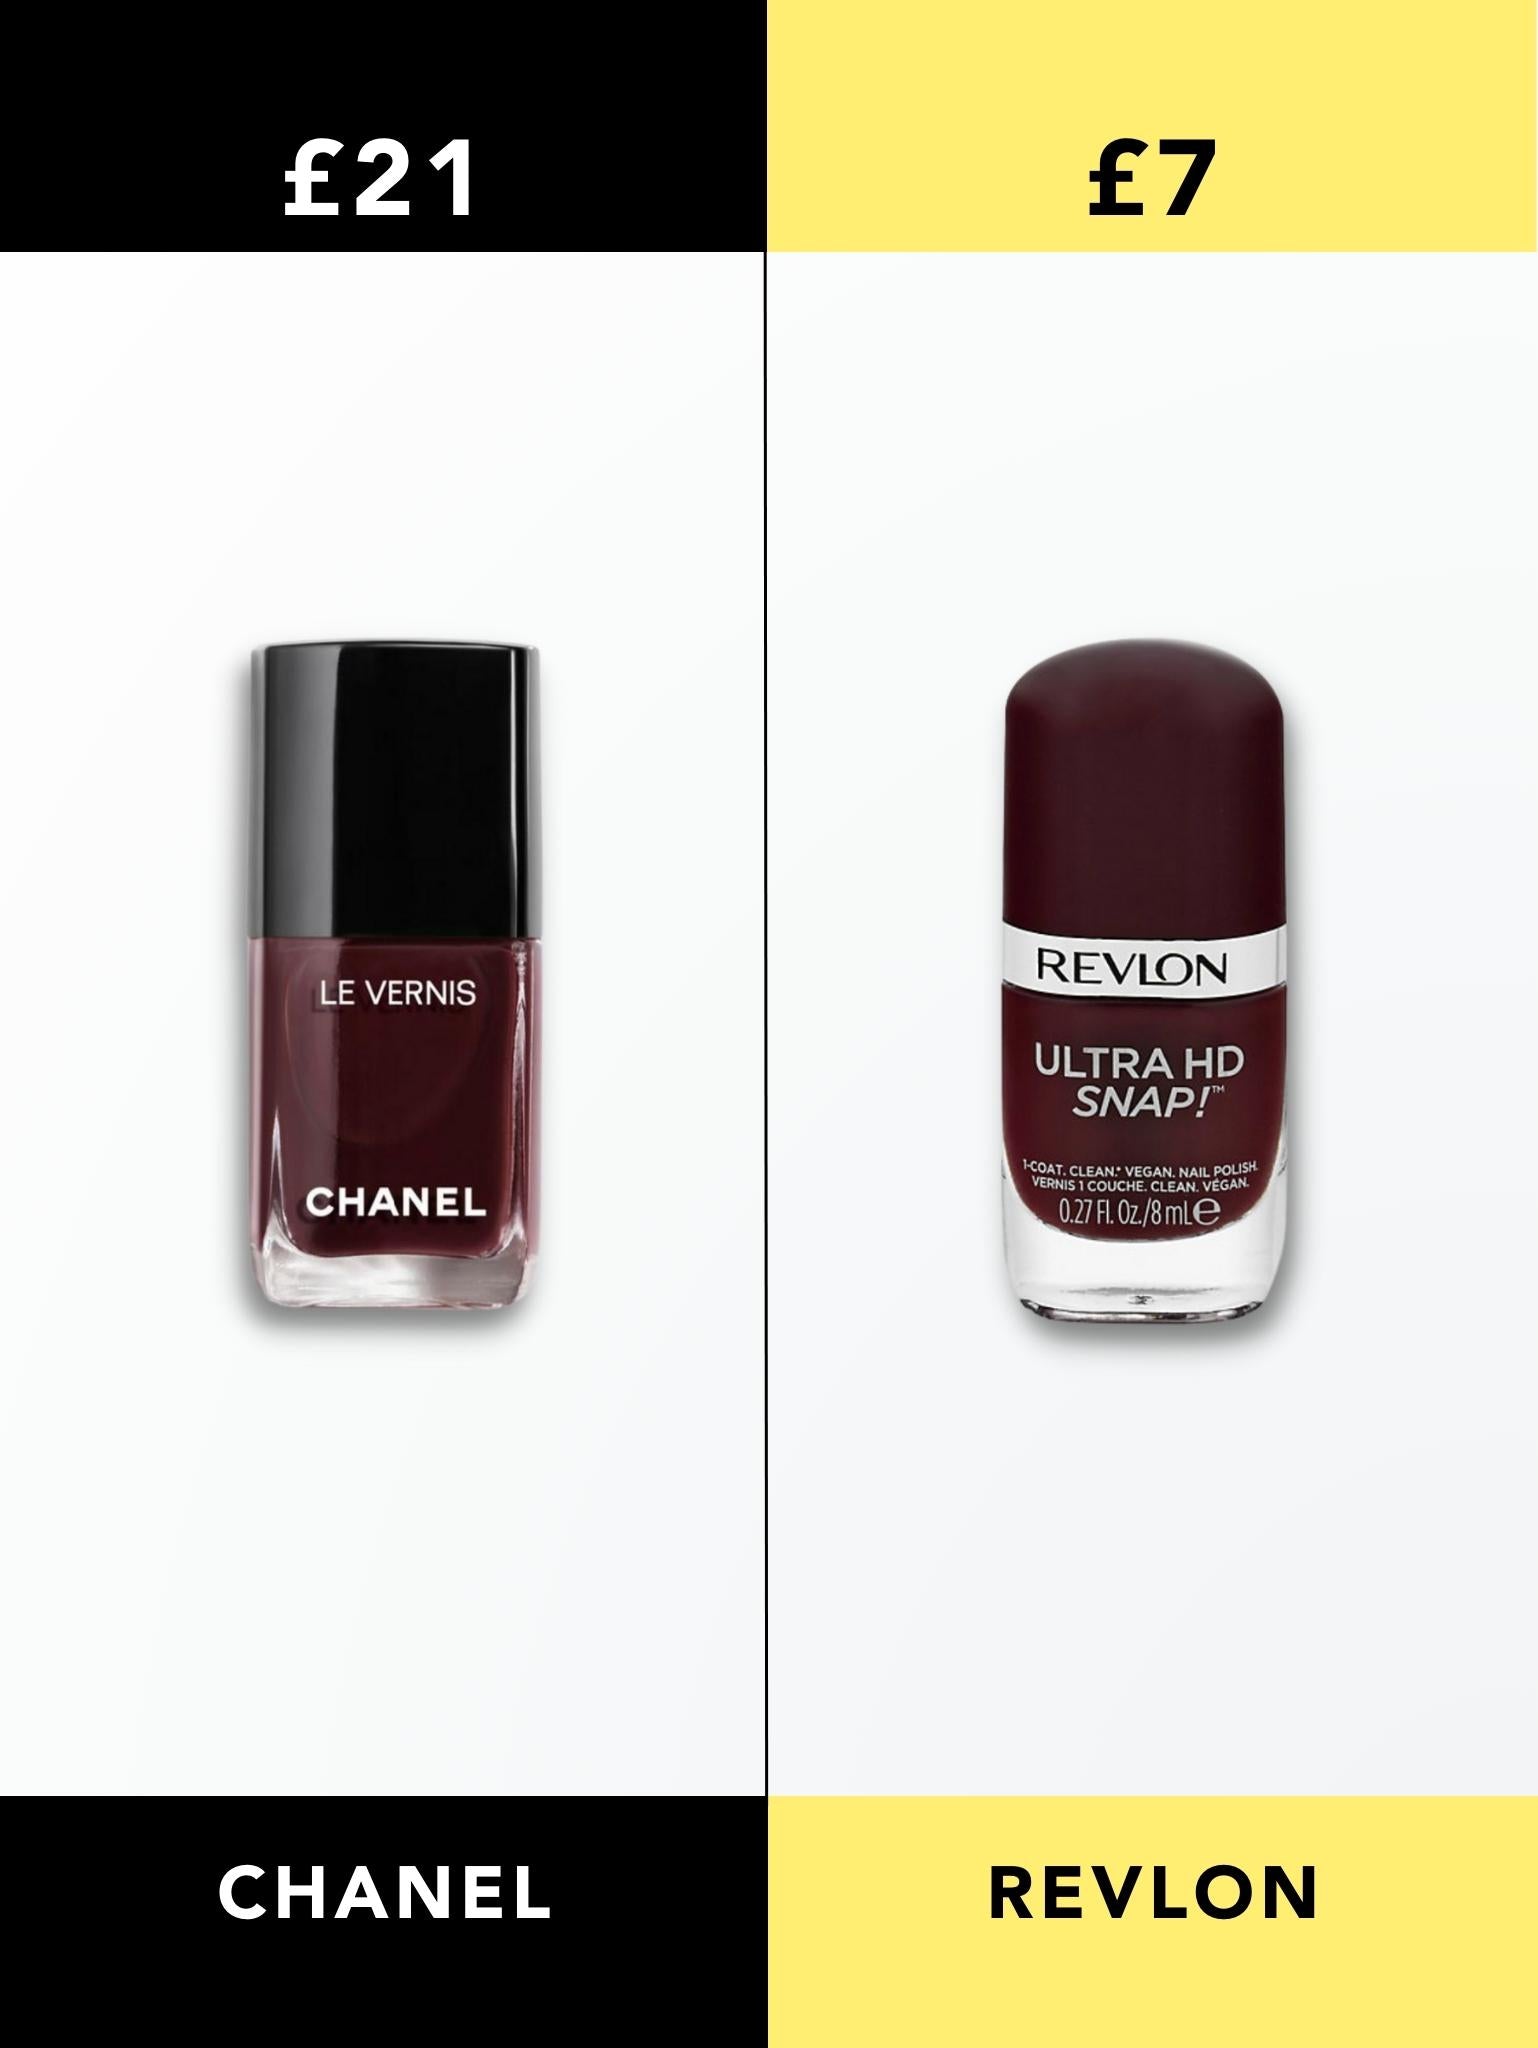 Chanel Le Vernis Nail Polish vs Revlon Nail Polish